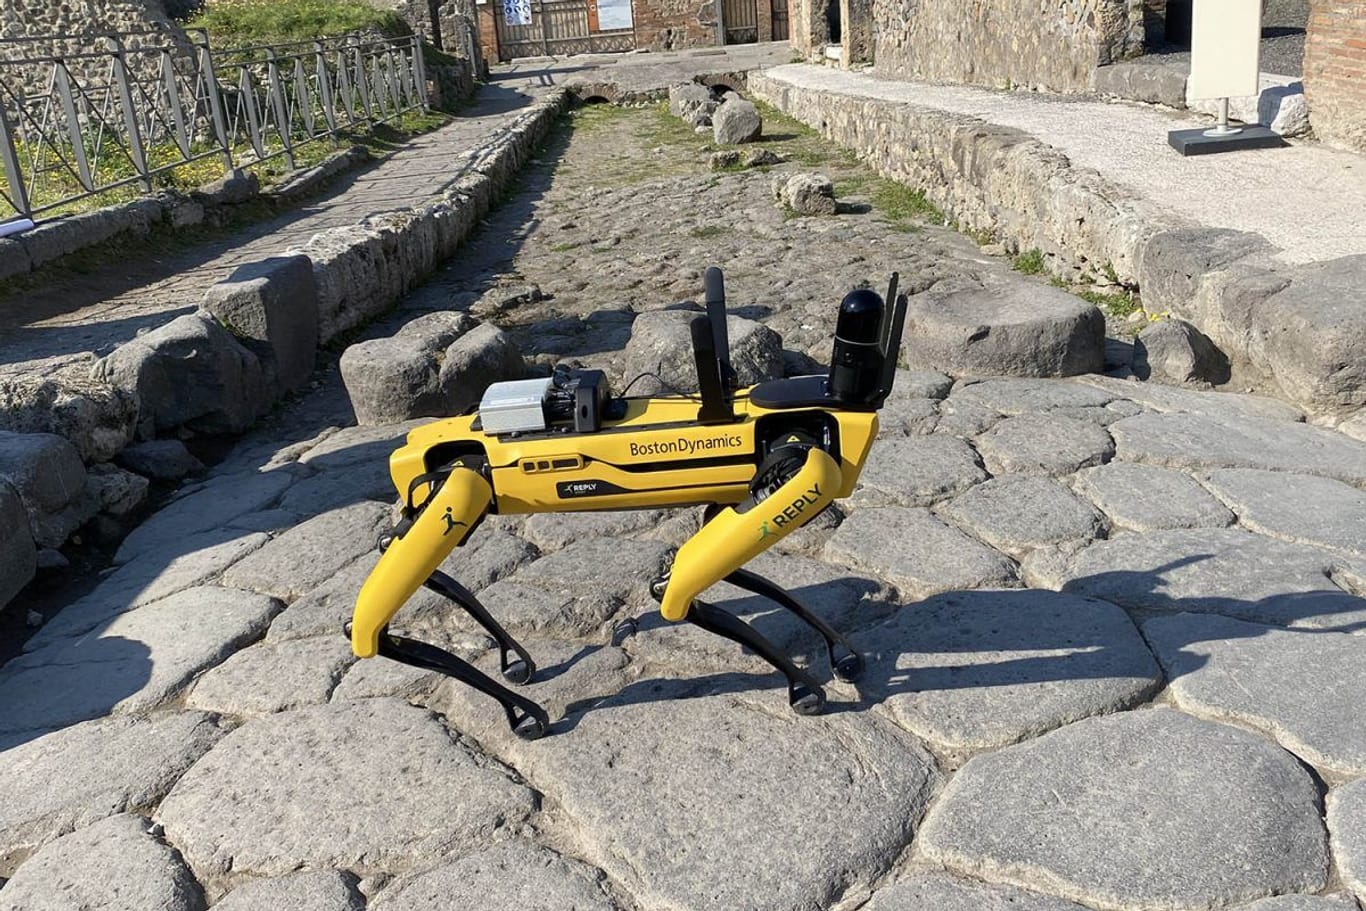 Spot in Pompeji: Der Roboterhund inspiziert die archäologische Anlage.